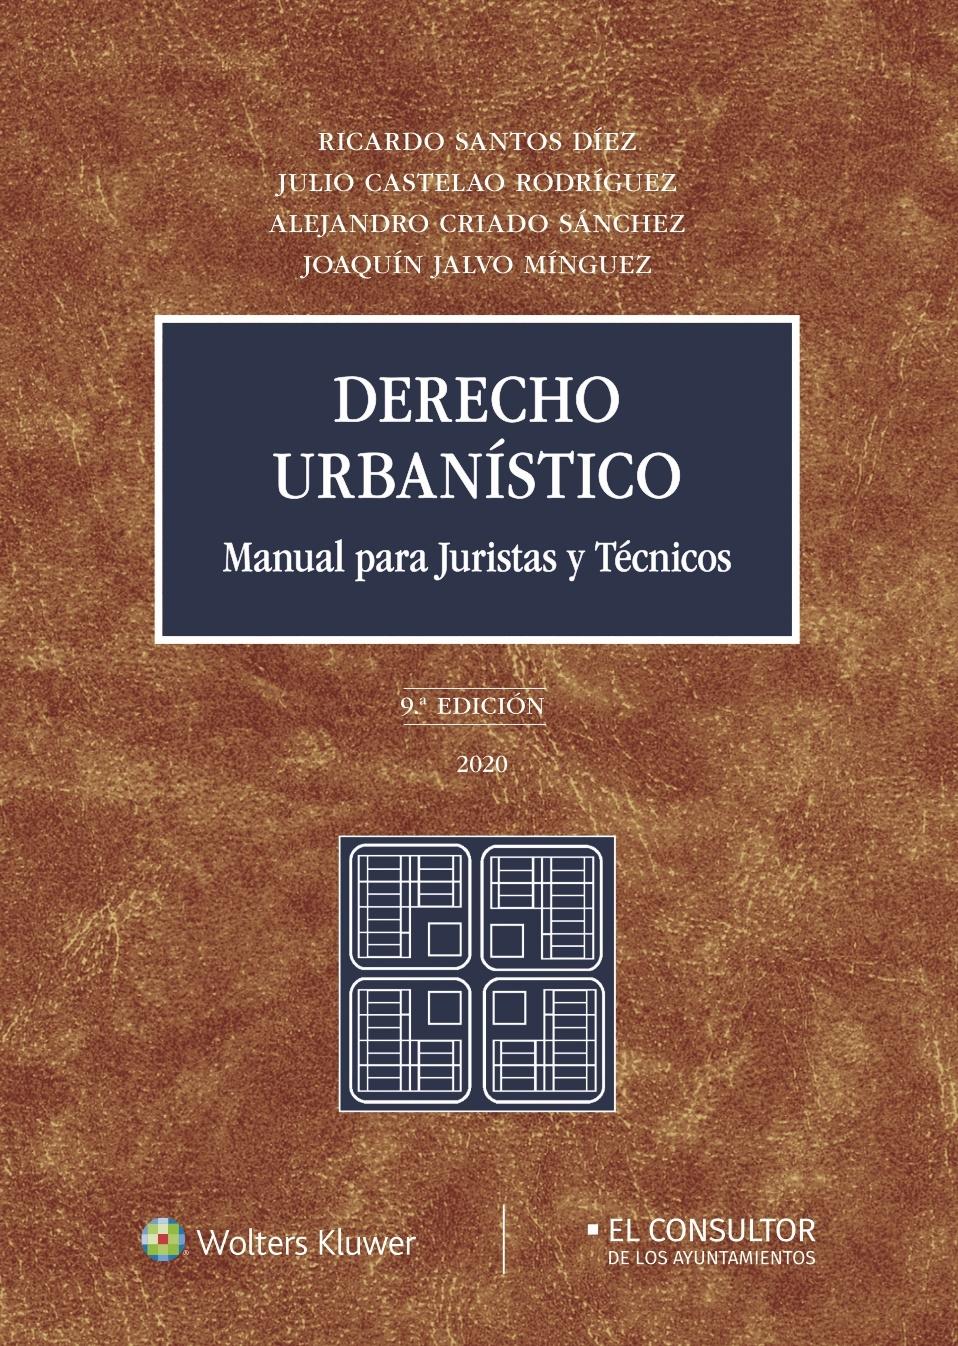 Derecho urbanístico (9.ª Edición) "Manual para juristas y técnicos"